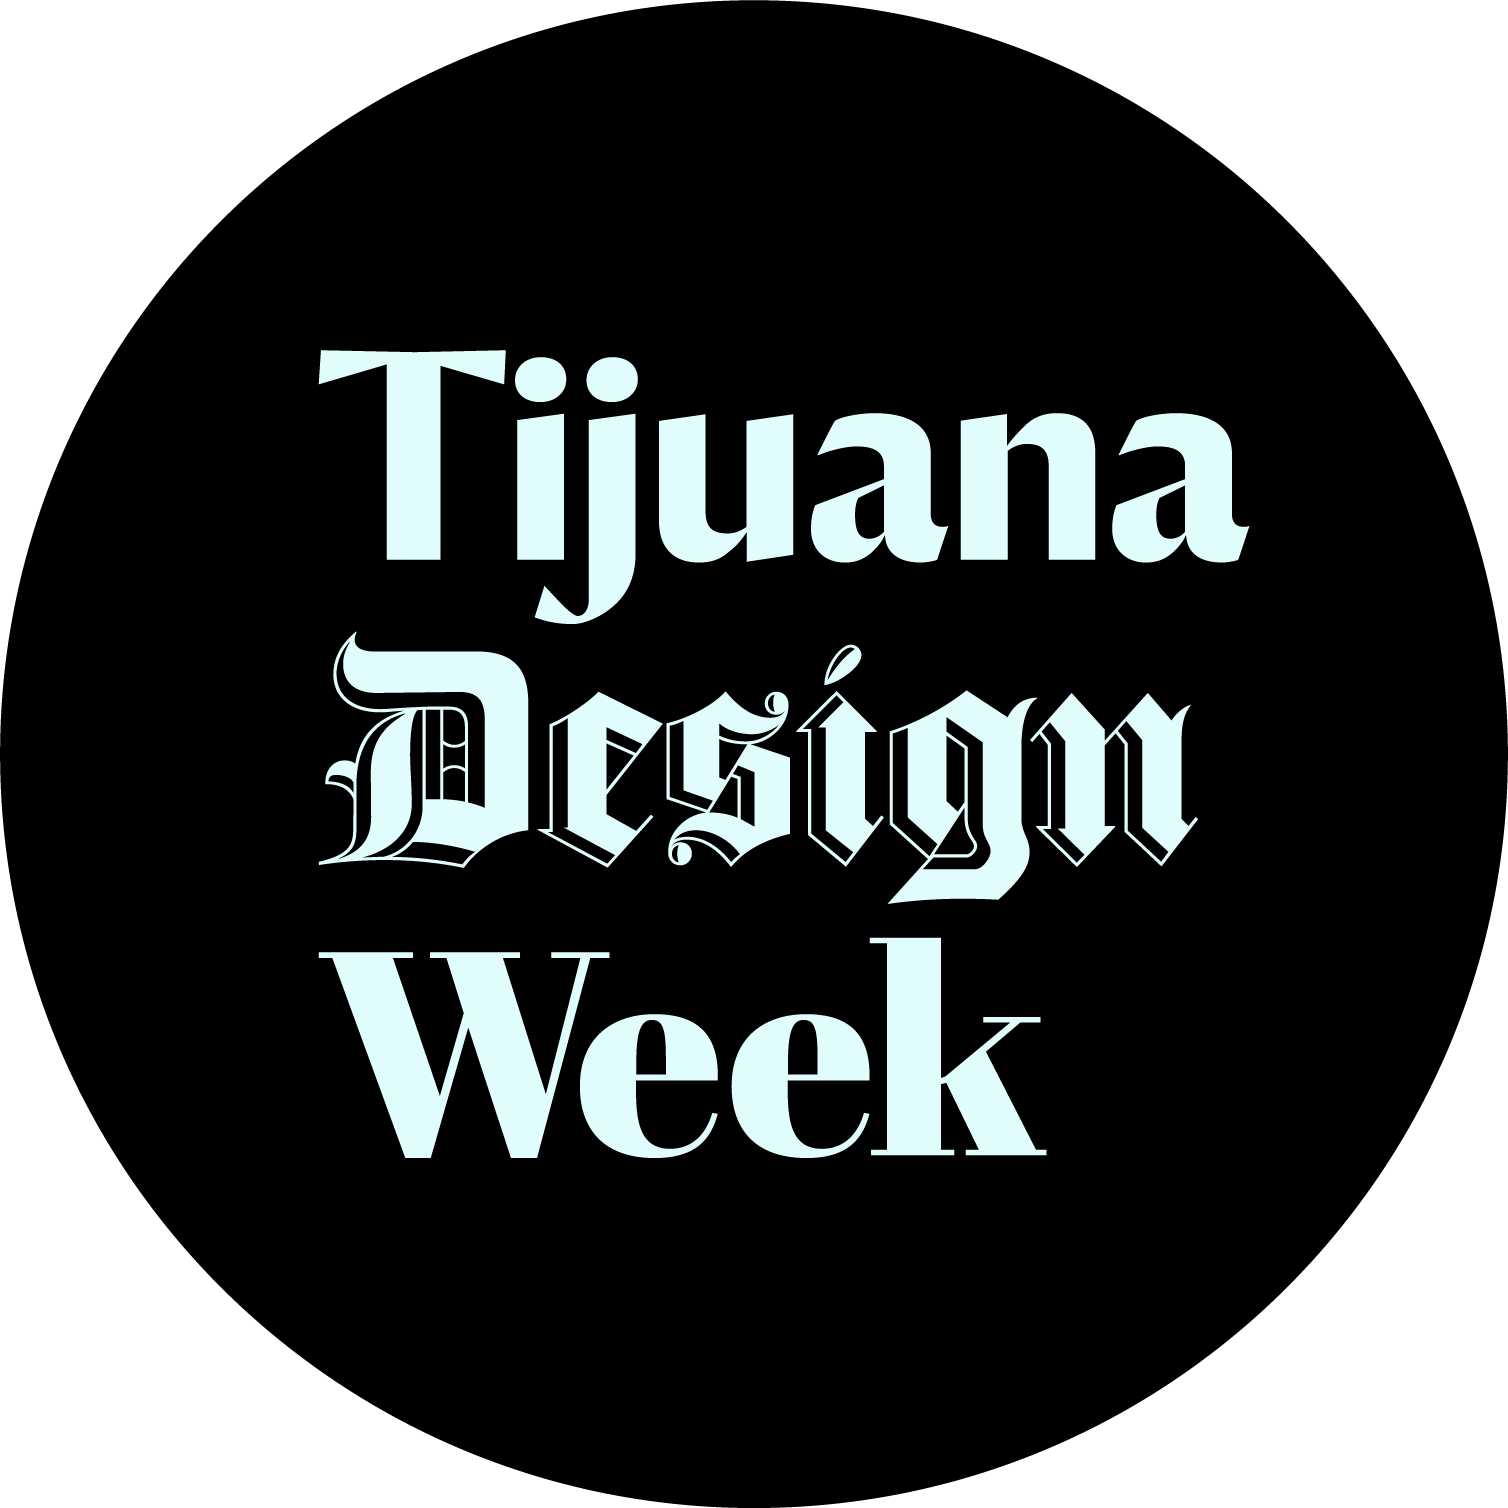 TJDW :: Tijuana Design Week